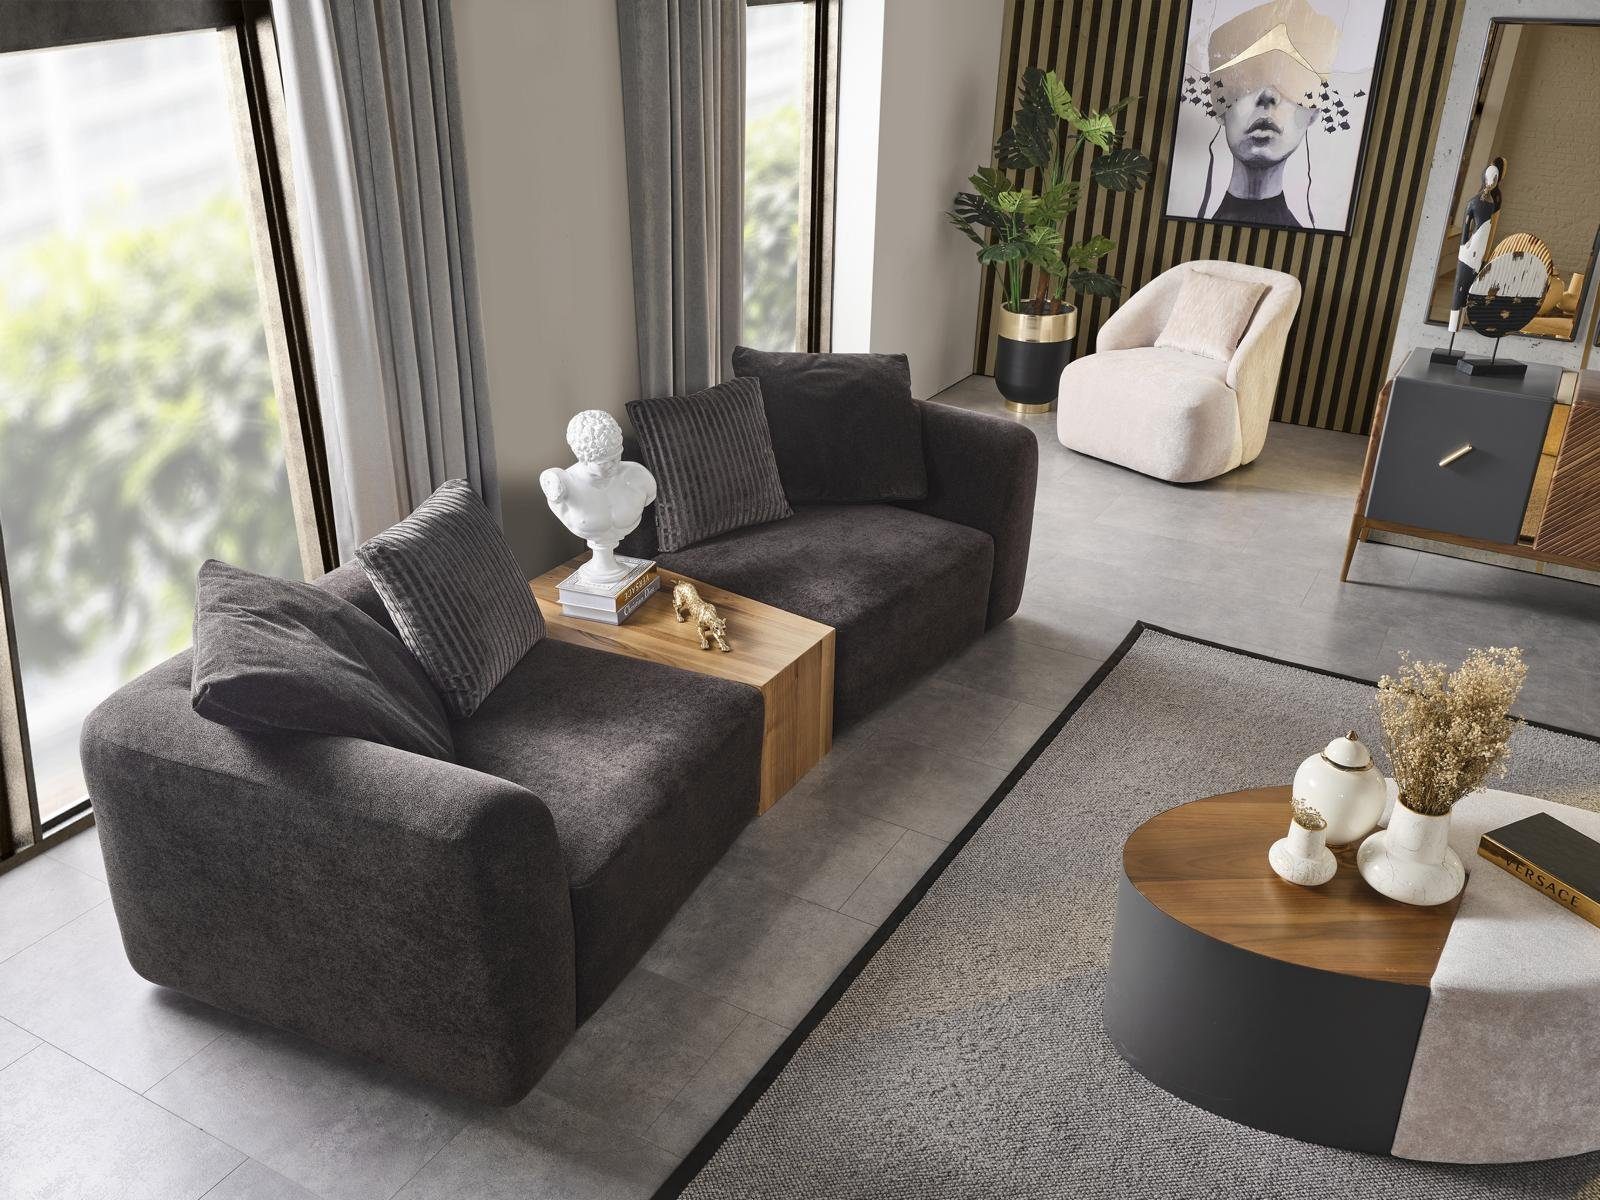 JVmoebel 3-Sitzer Sofa Möbel Textil Modern Sitzer 3 Sofas Polster Neu Wohnzimmer grau